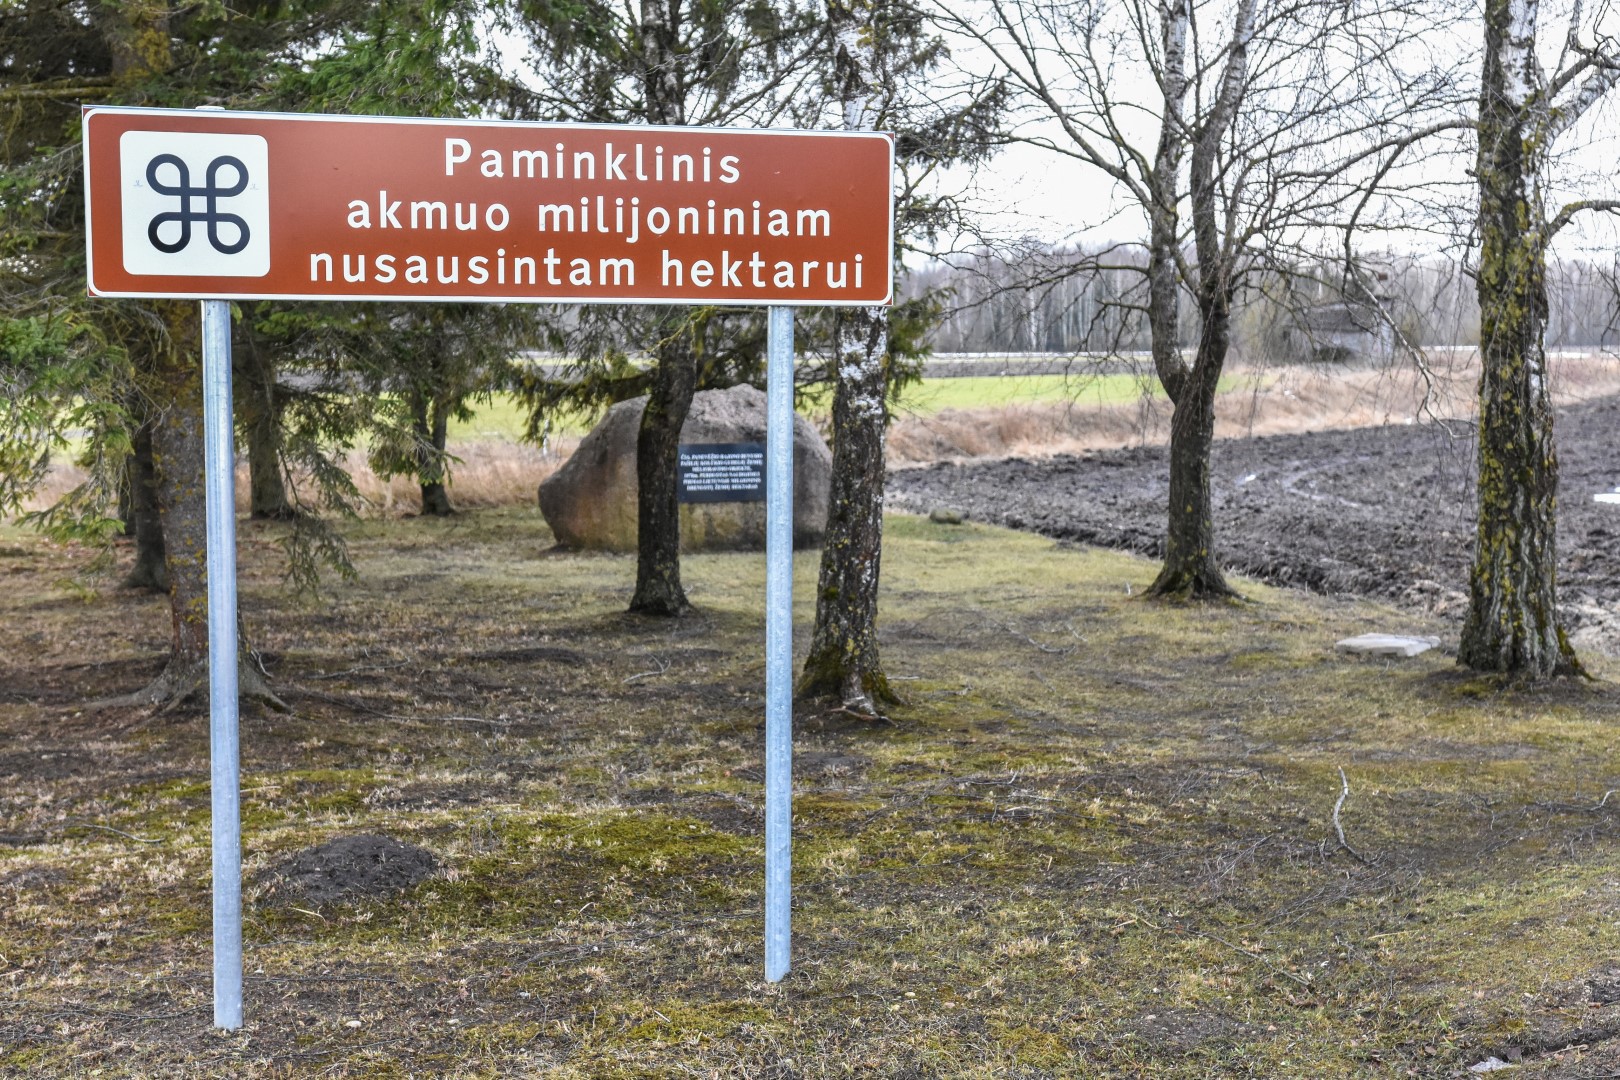 Panevėžio rajonas į saugomų gamtos ir kultūros paveldo vertybių sąrašą įtraukęs ir akmenį, menantį melioracijos vajų Lietuvoje ir iškilmingą jo atidengimo ceremoniją su ditirambais sovietinei sistemai.